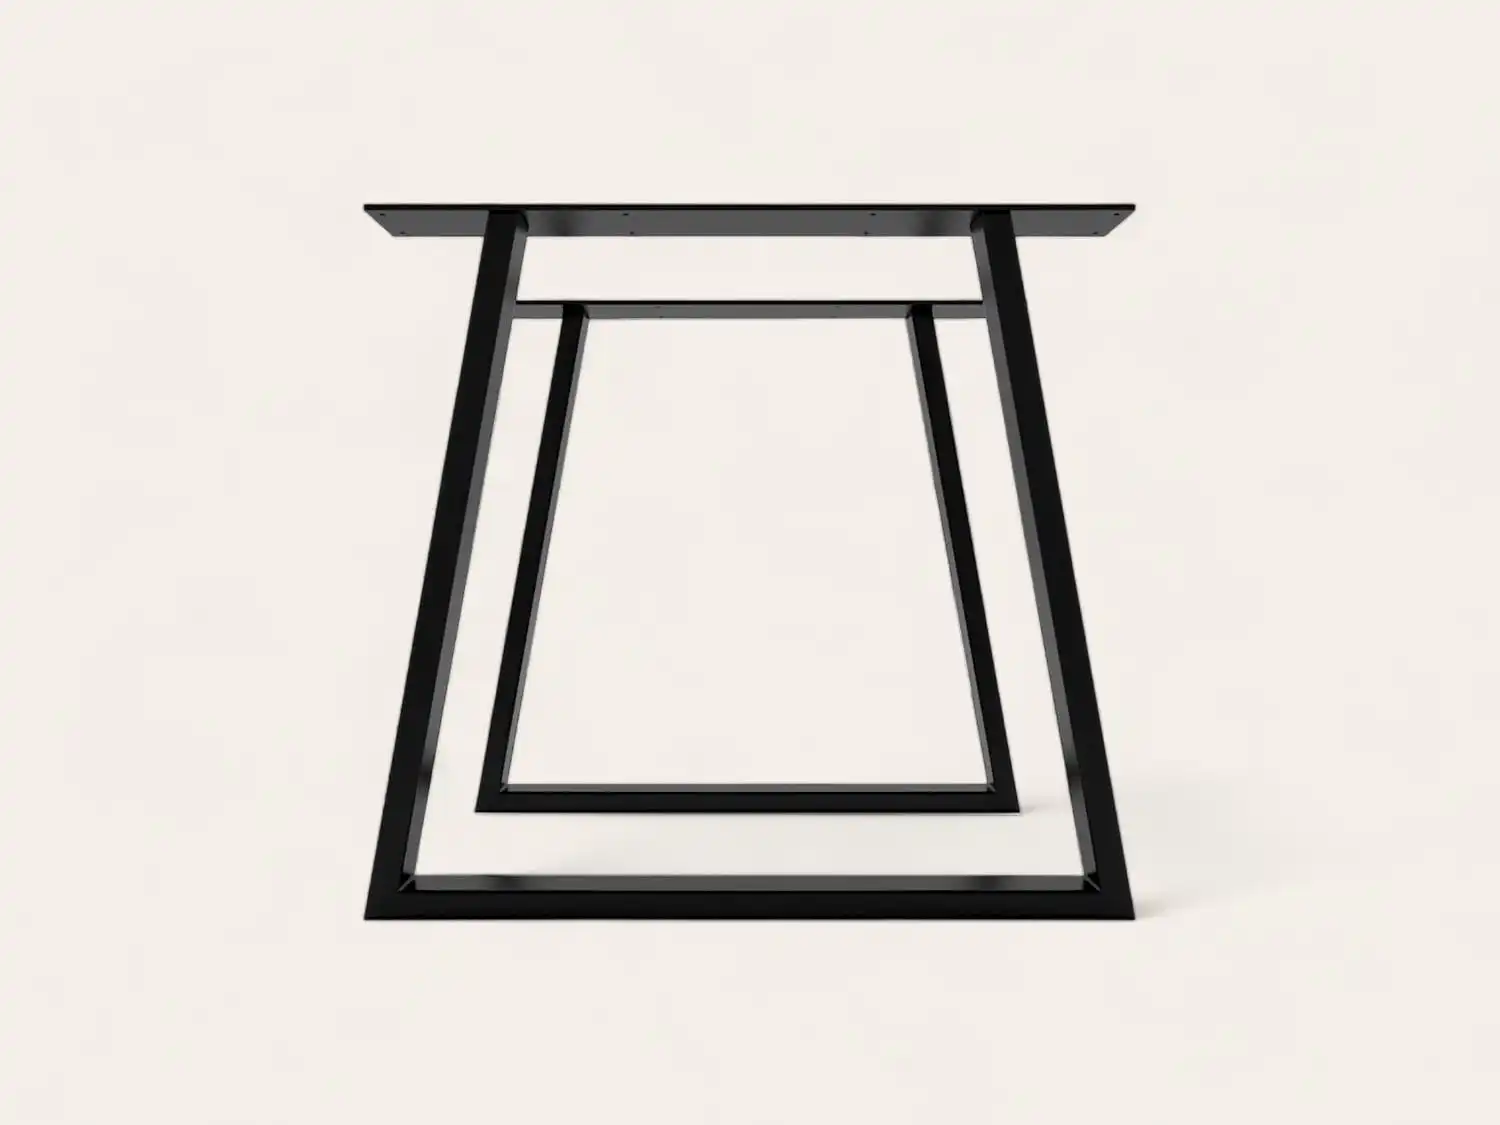 Un cadre de table en métal noir avec un design trapézoïdal vu du dessus.